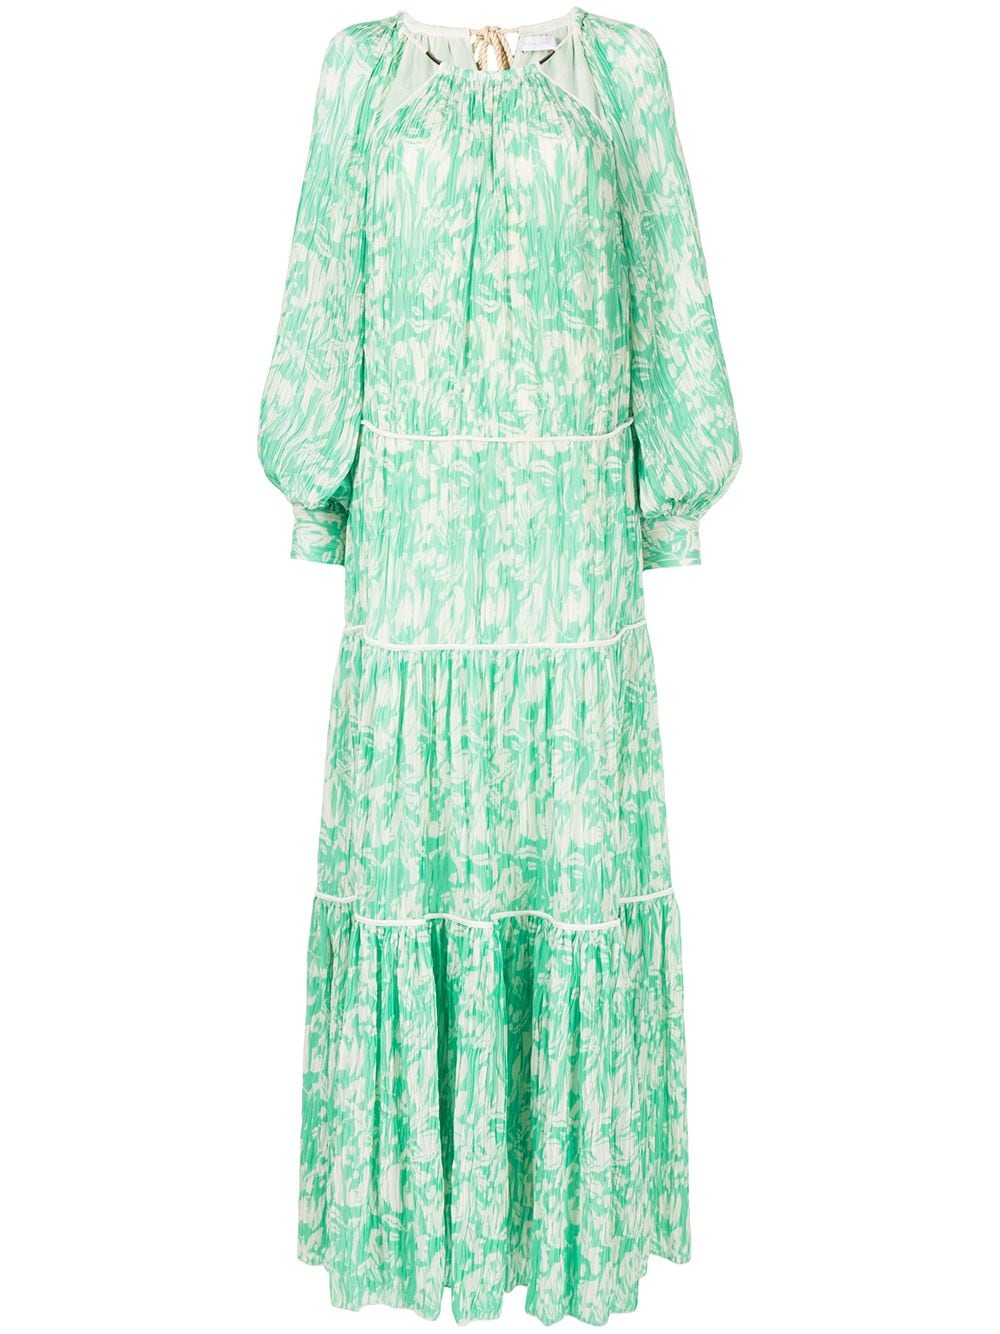 Simkhai cut-out neckline long dress - Green von Simkhai